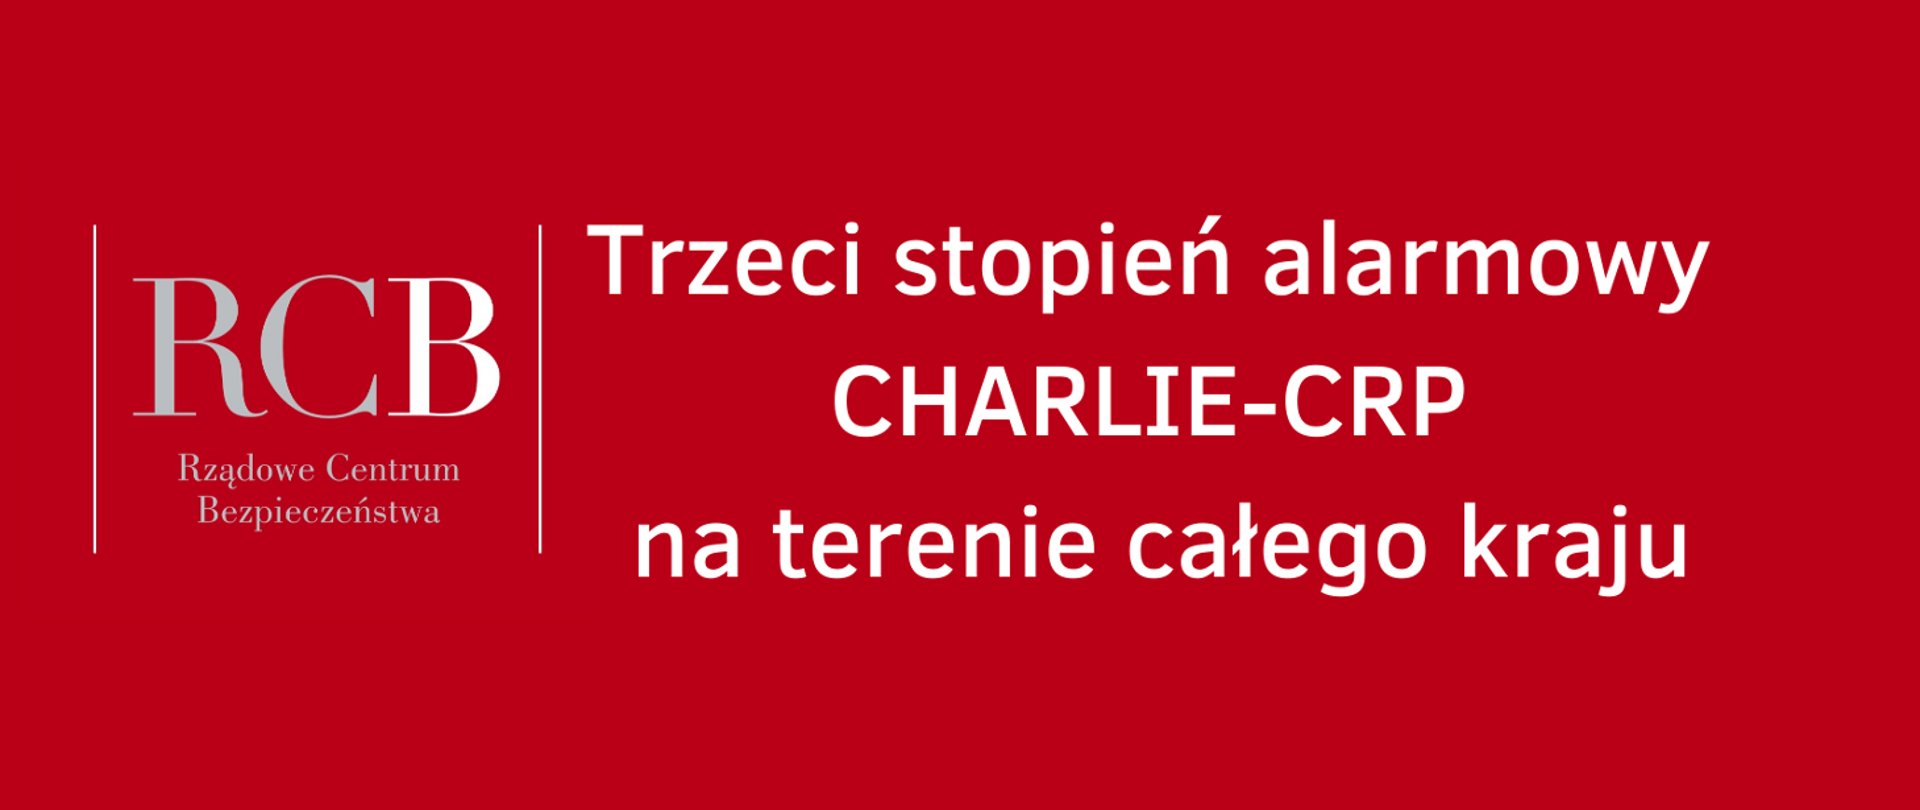 Rządowe Centrum Bezpieczeństwa- napis na czerwonym tle " Trzeci stopień alarmowy CHARLIE_CRP na terenie całego kraju"